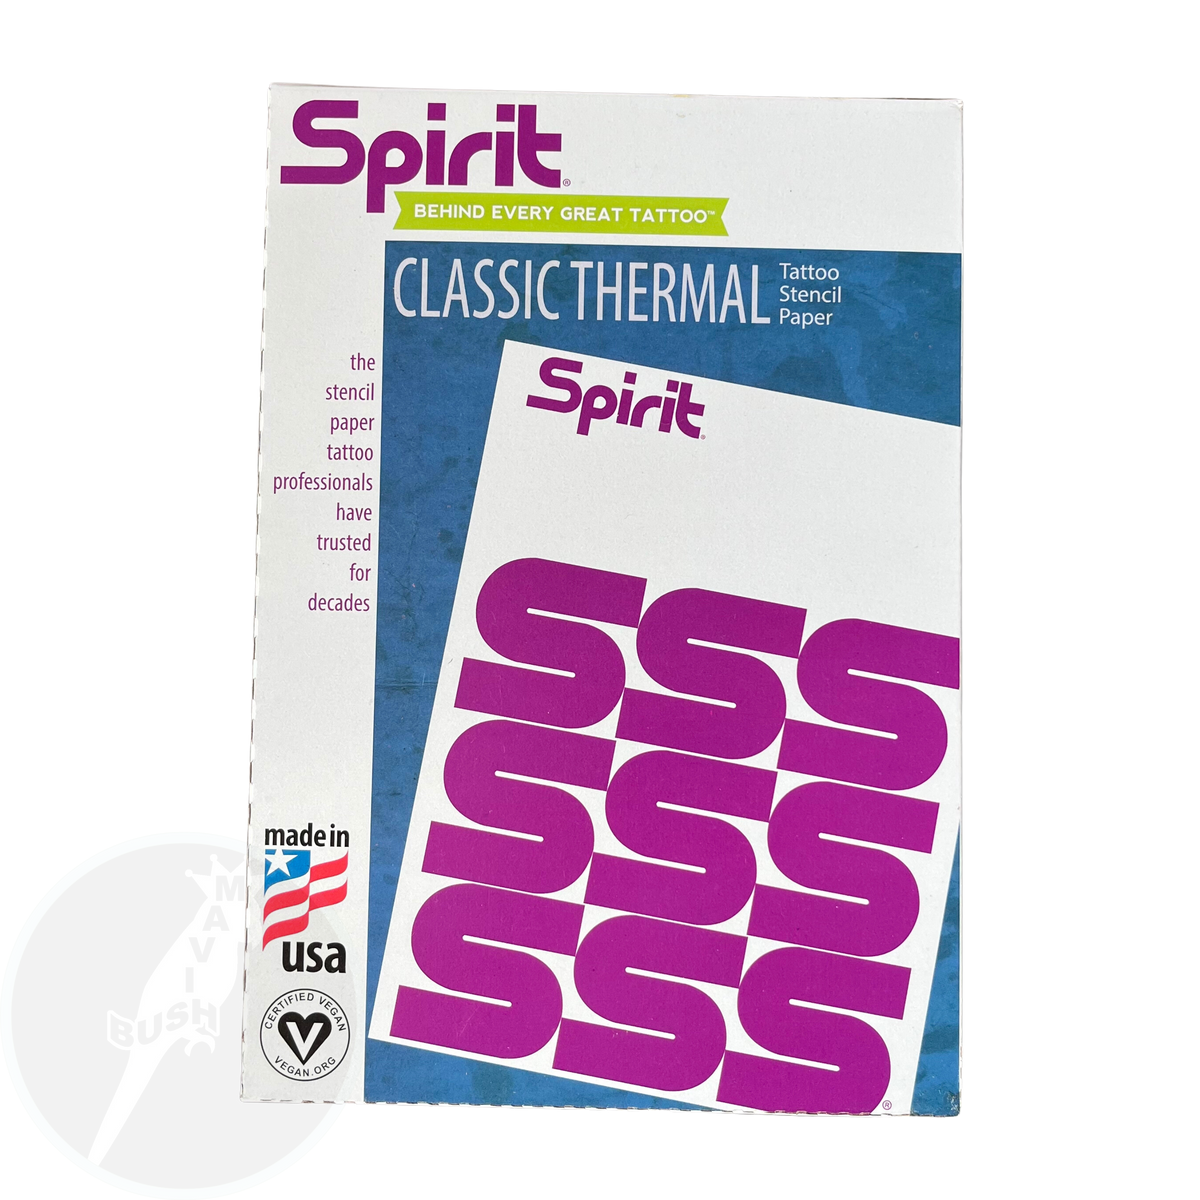 Spirit Classic Thermal Tattoo Transfer Paper 8" X 11" - 100 Sheets - Mavis Bush Tattoo Supplies